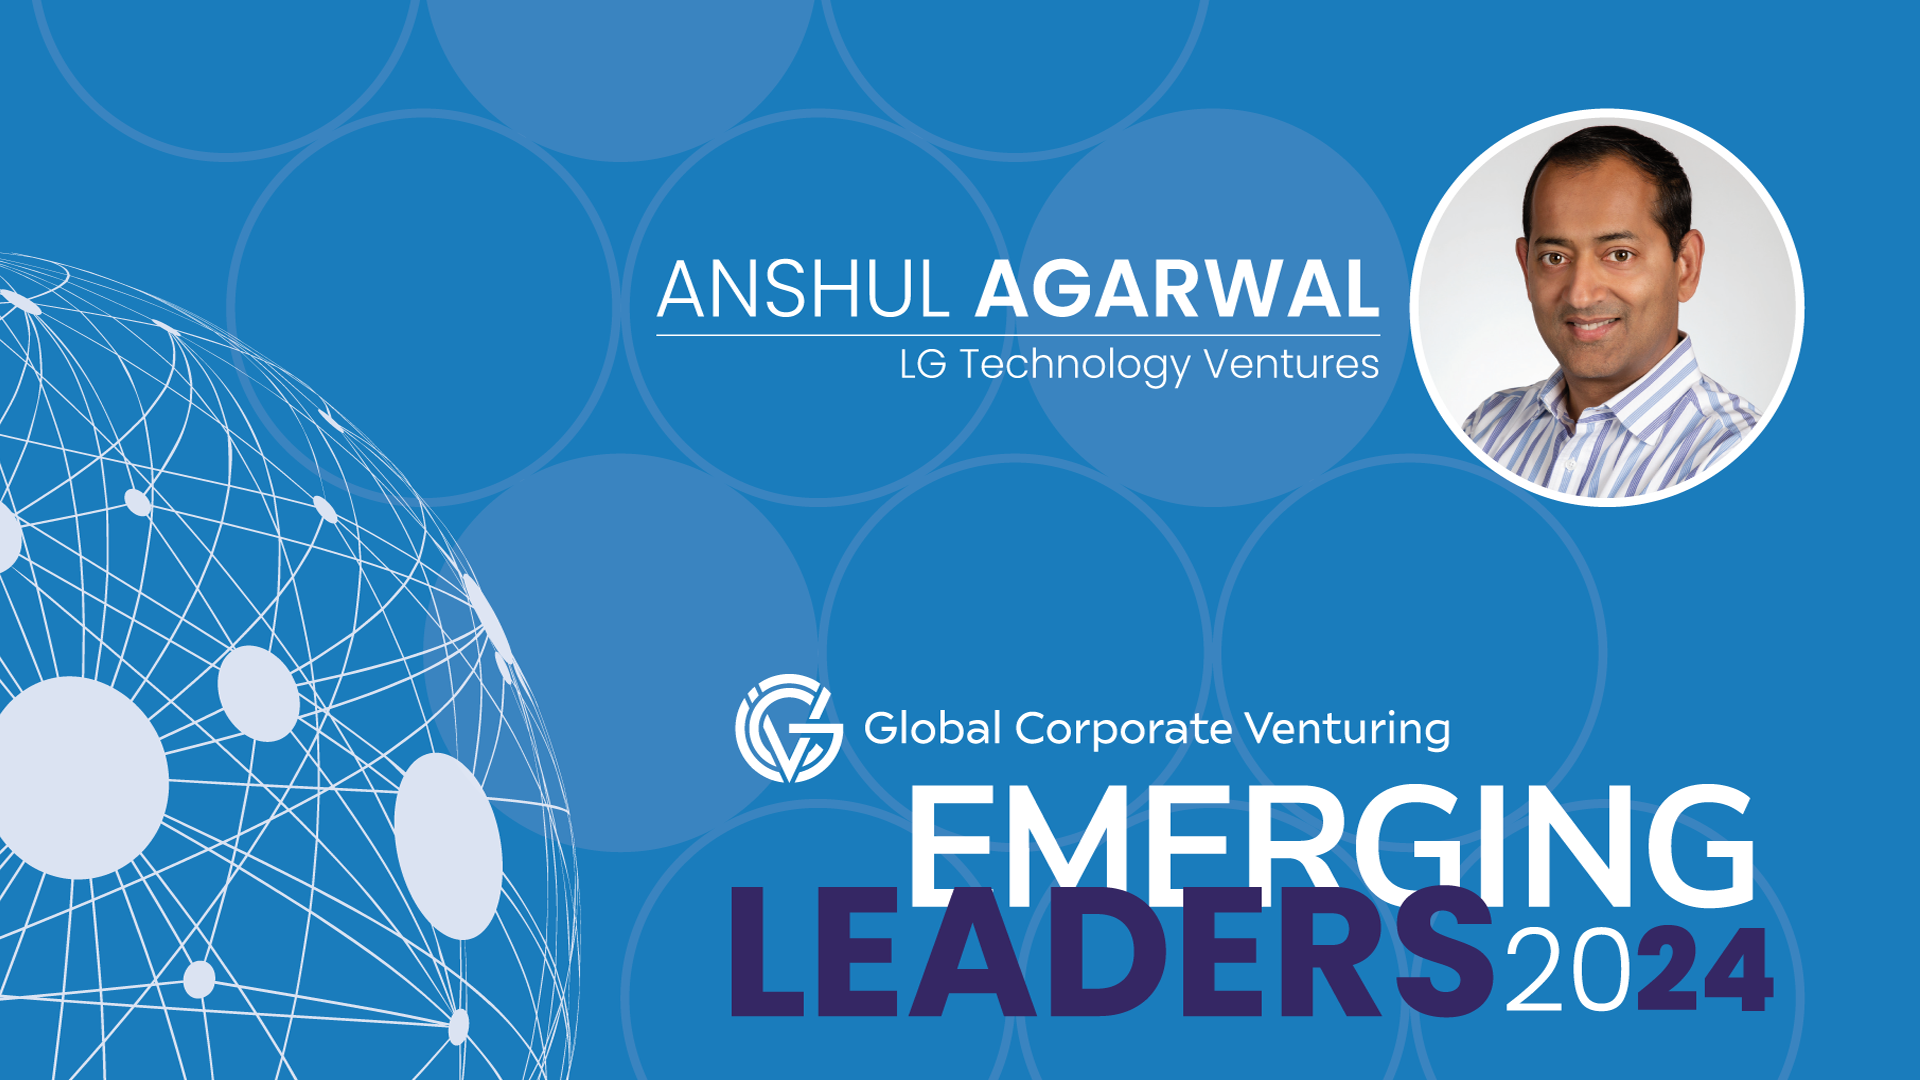 Anshul Agarwal, LG Technology Ventures